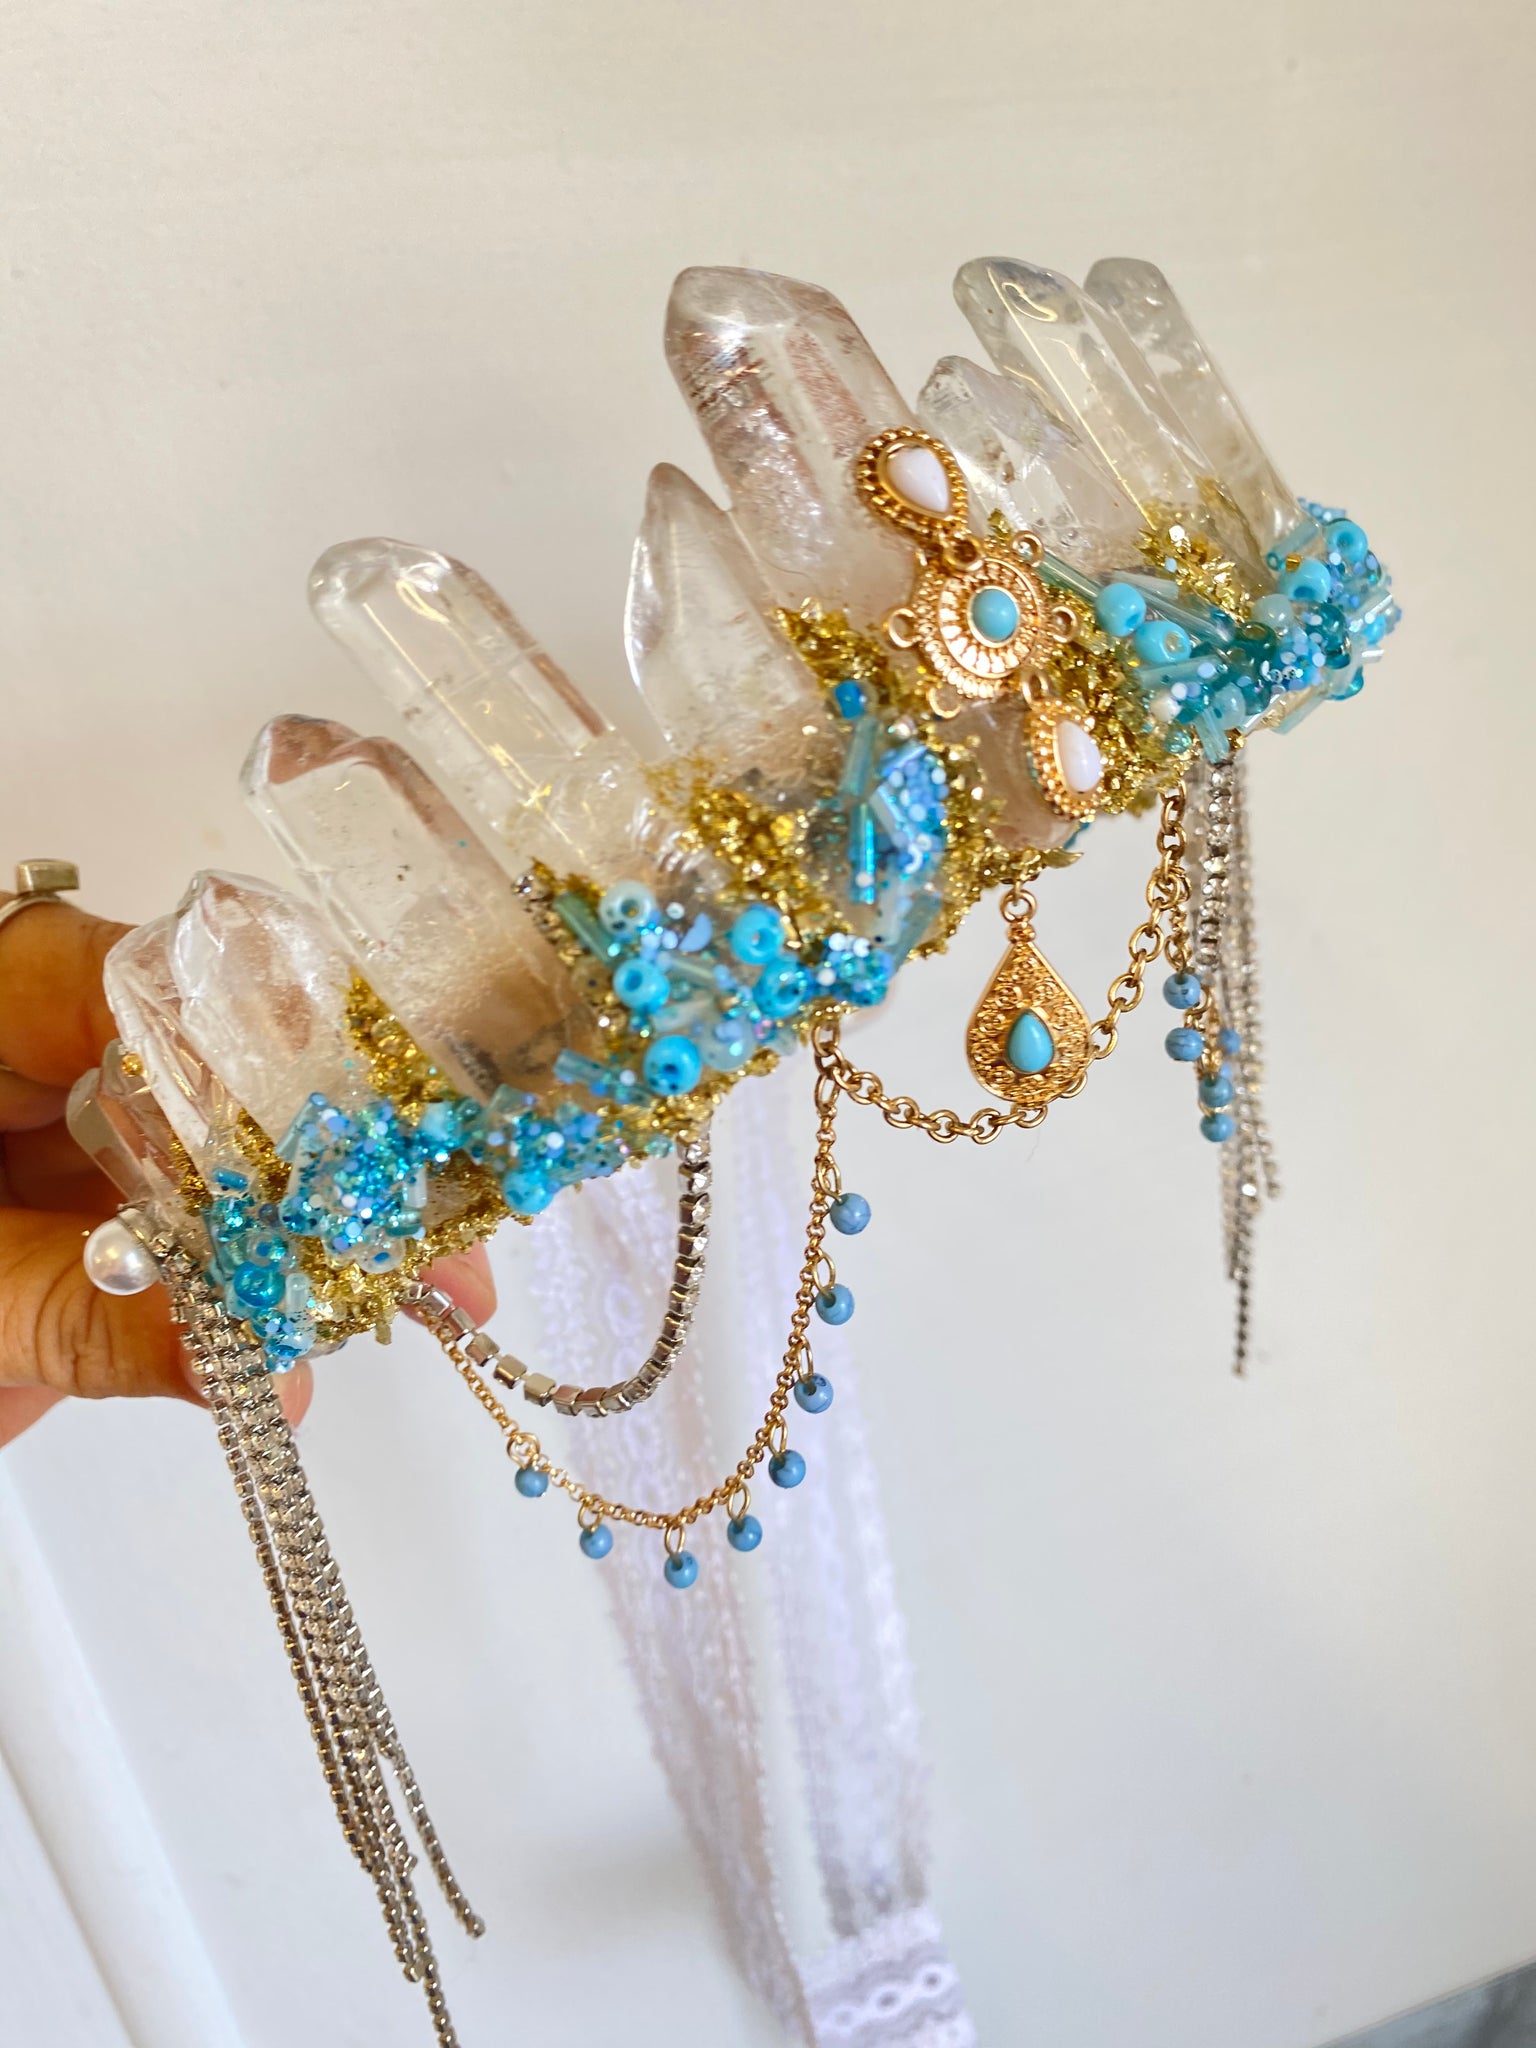 Crystal dream crown — Summers Dreaming Mermaid Crowns